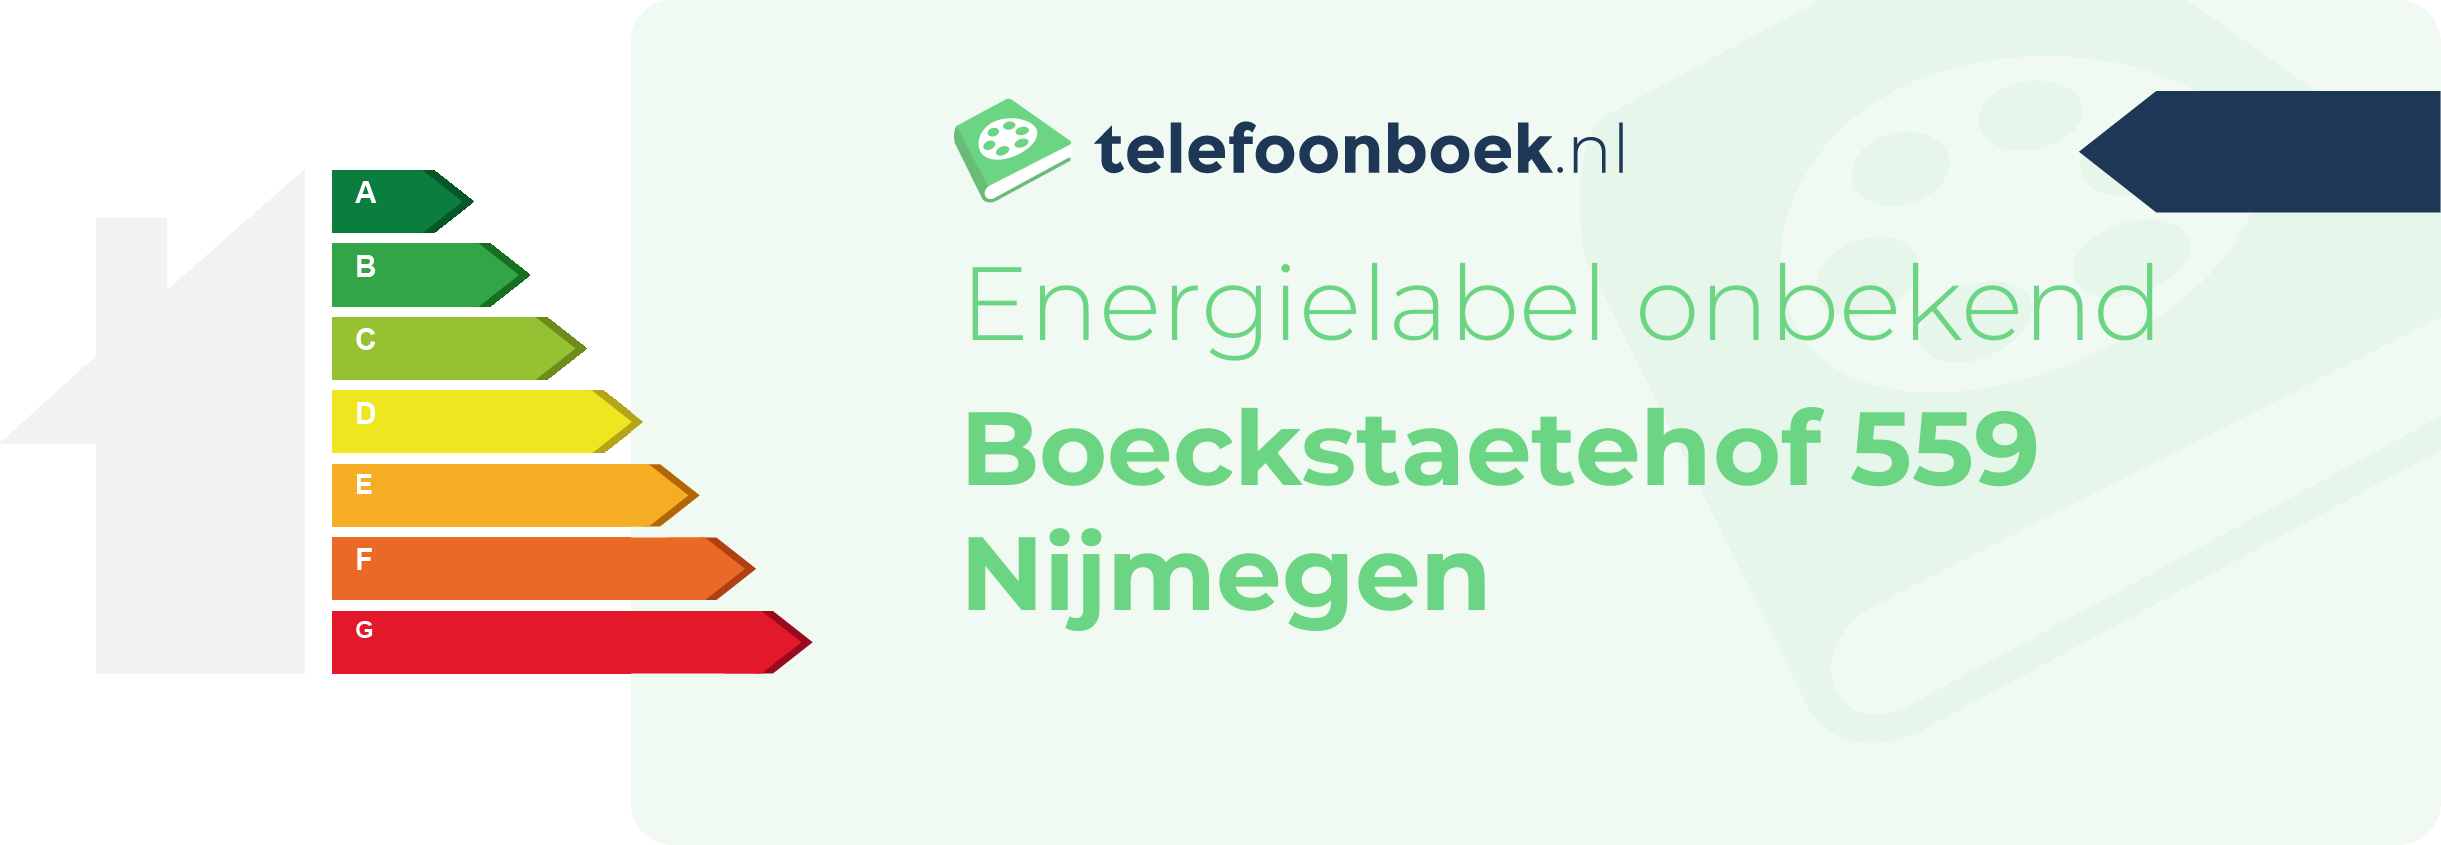 Energielabel Boeckstaetehof 559 Nijmegen